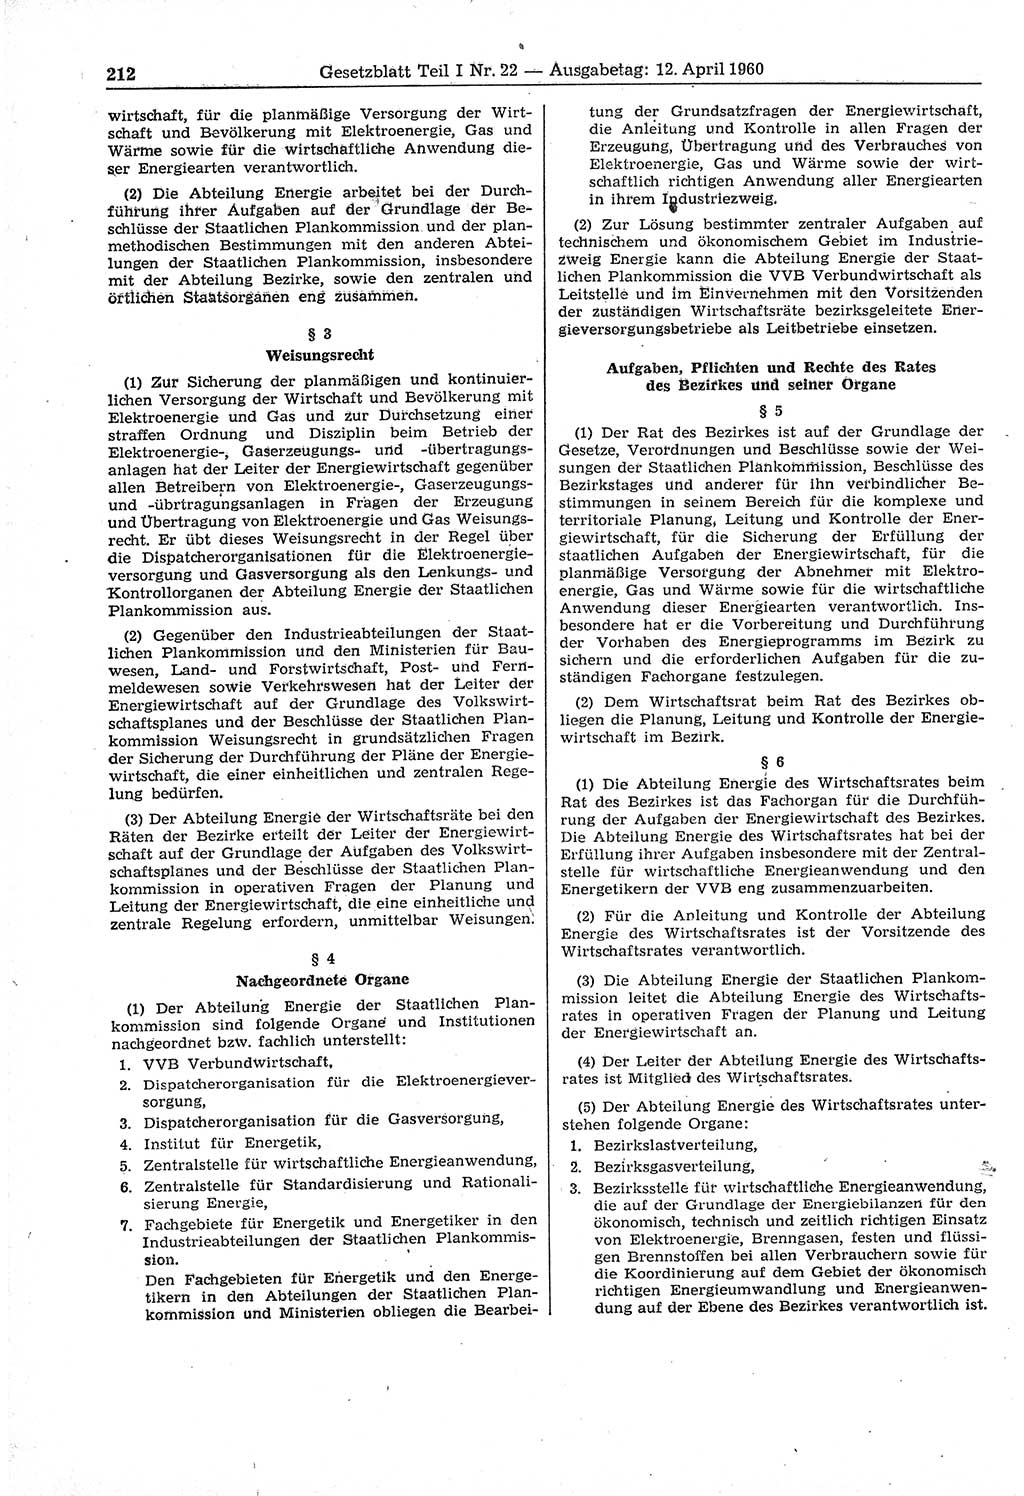 Gesetzblatt (GBl.) der Deutschen Demokratischen Republik (DDR) Teil Ⅰ 1960, Seite 212 (GBl. DDR Ⅰ 1960, S. 212)